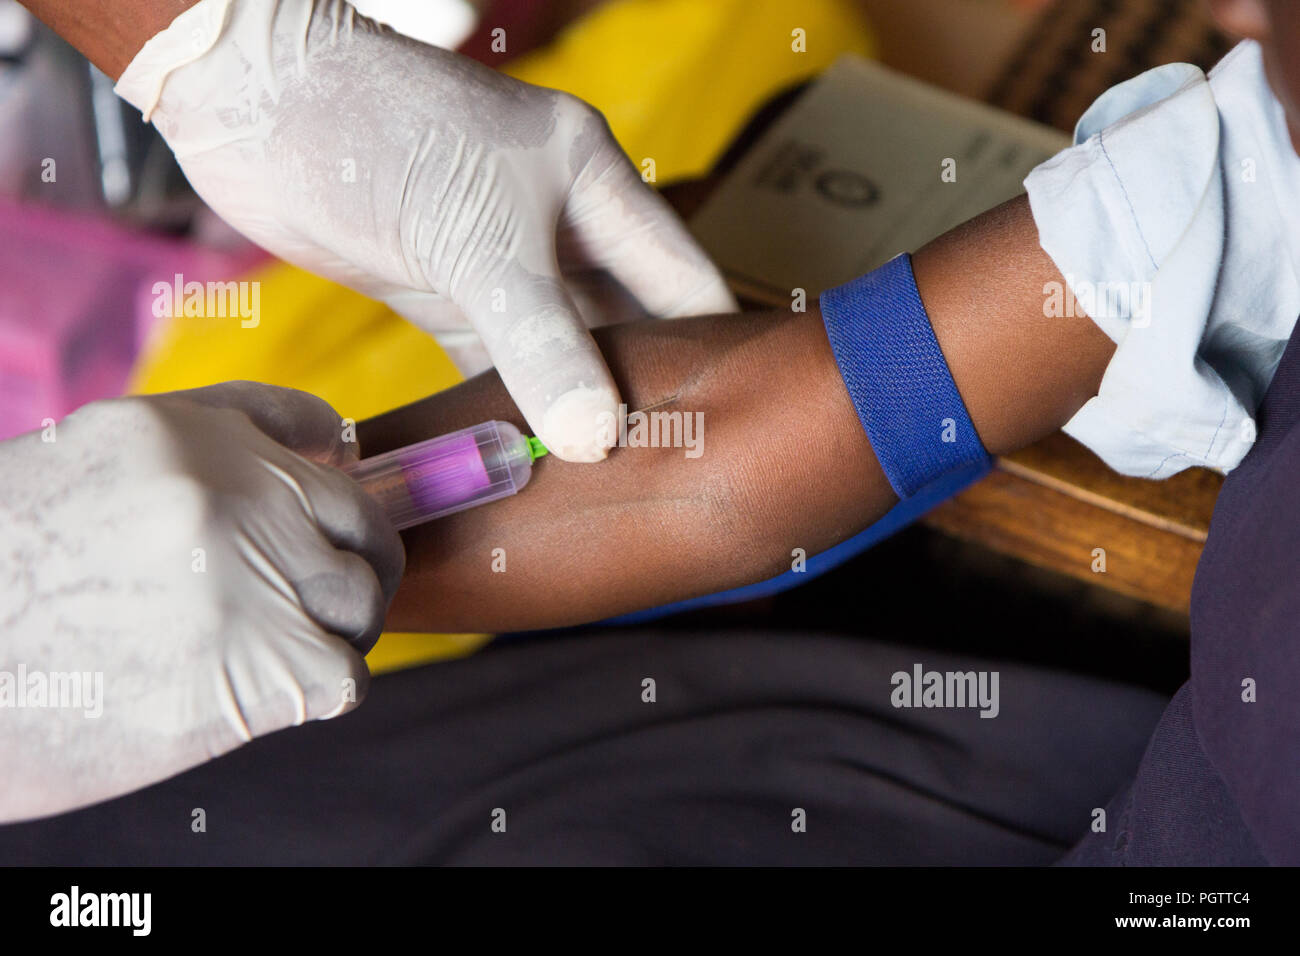 Un trabajador de la salud tomando una muestra de sangre de la vena cubital perforando la vena y la recogida de sangre en un tubo de ensayo bajo presión negativa Foto de stock